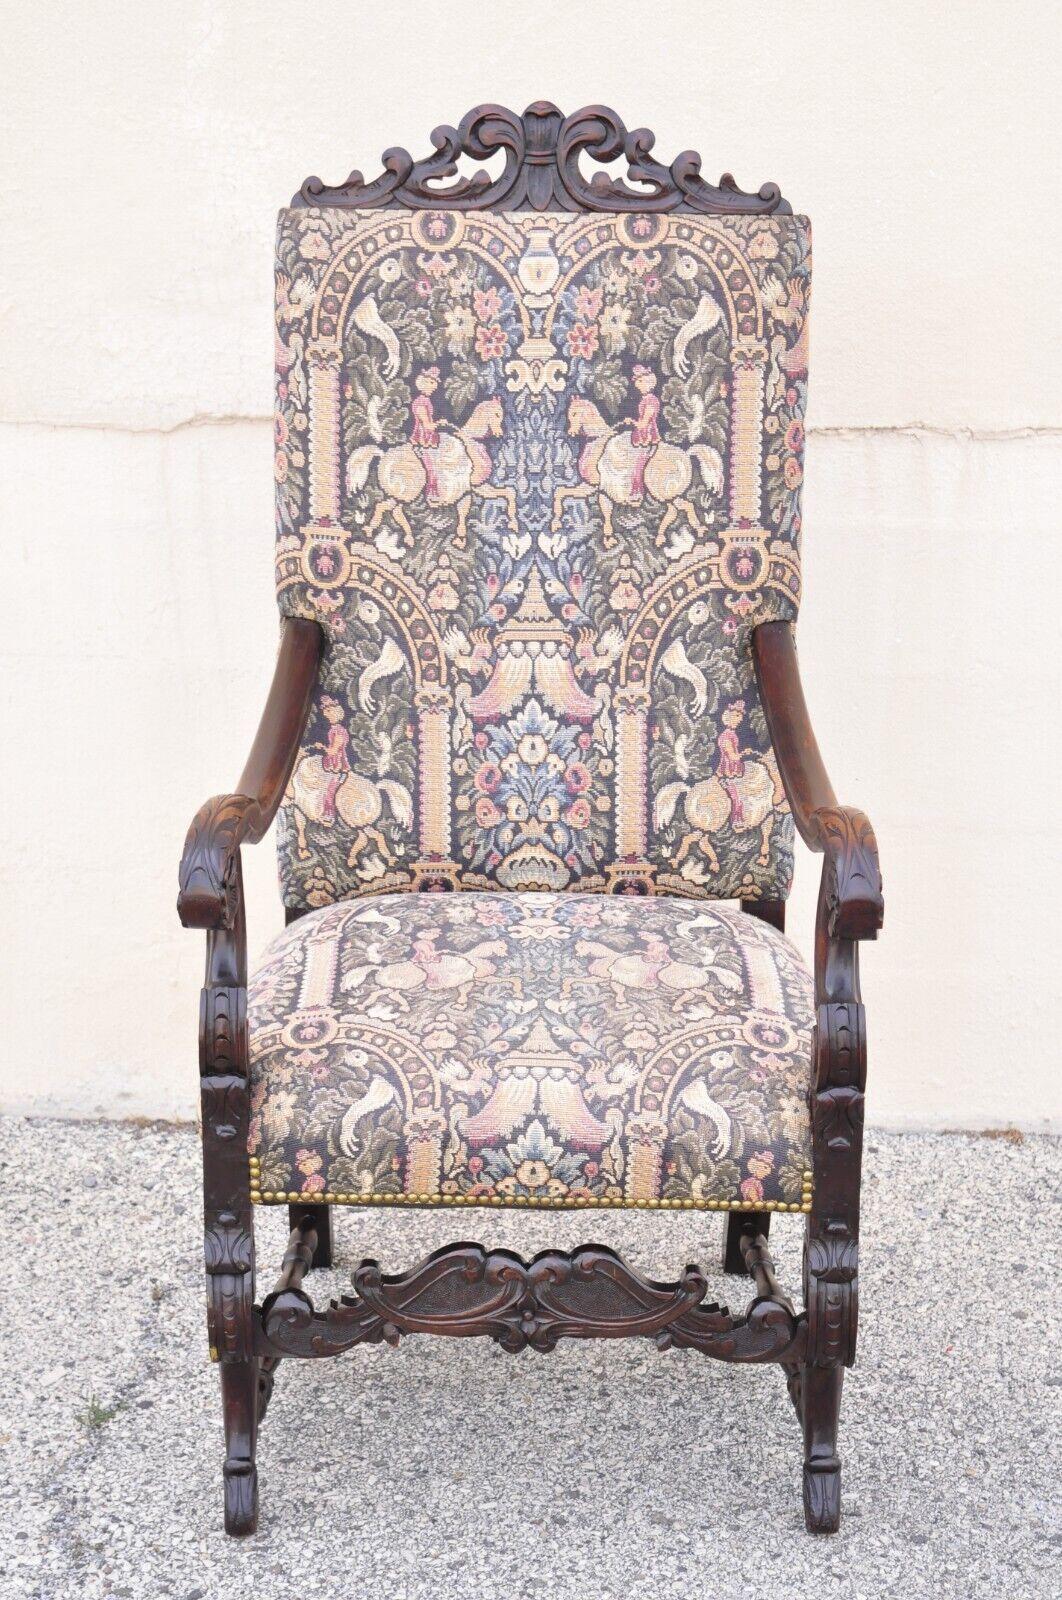 Antique fauteuil lounge en tapisserie baroque de la Renaissance italienne. Cet article présente une tapisserie figurative, une base en acier, un cadre en bois massif, un beau grain de bois, des détails joliment sculptés, un très bel article ancien.